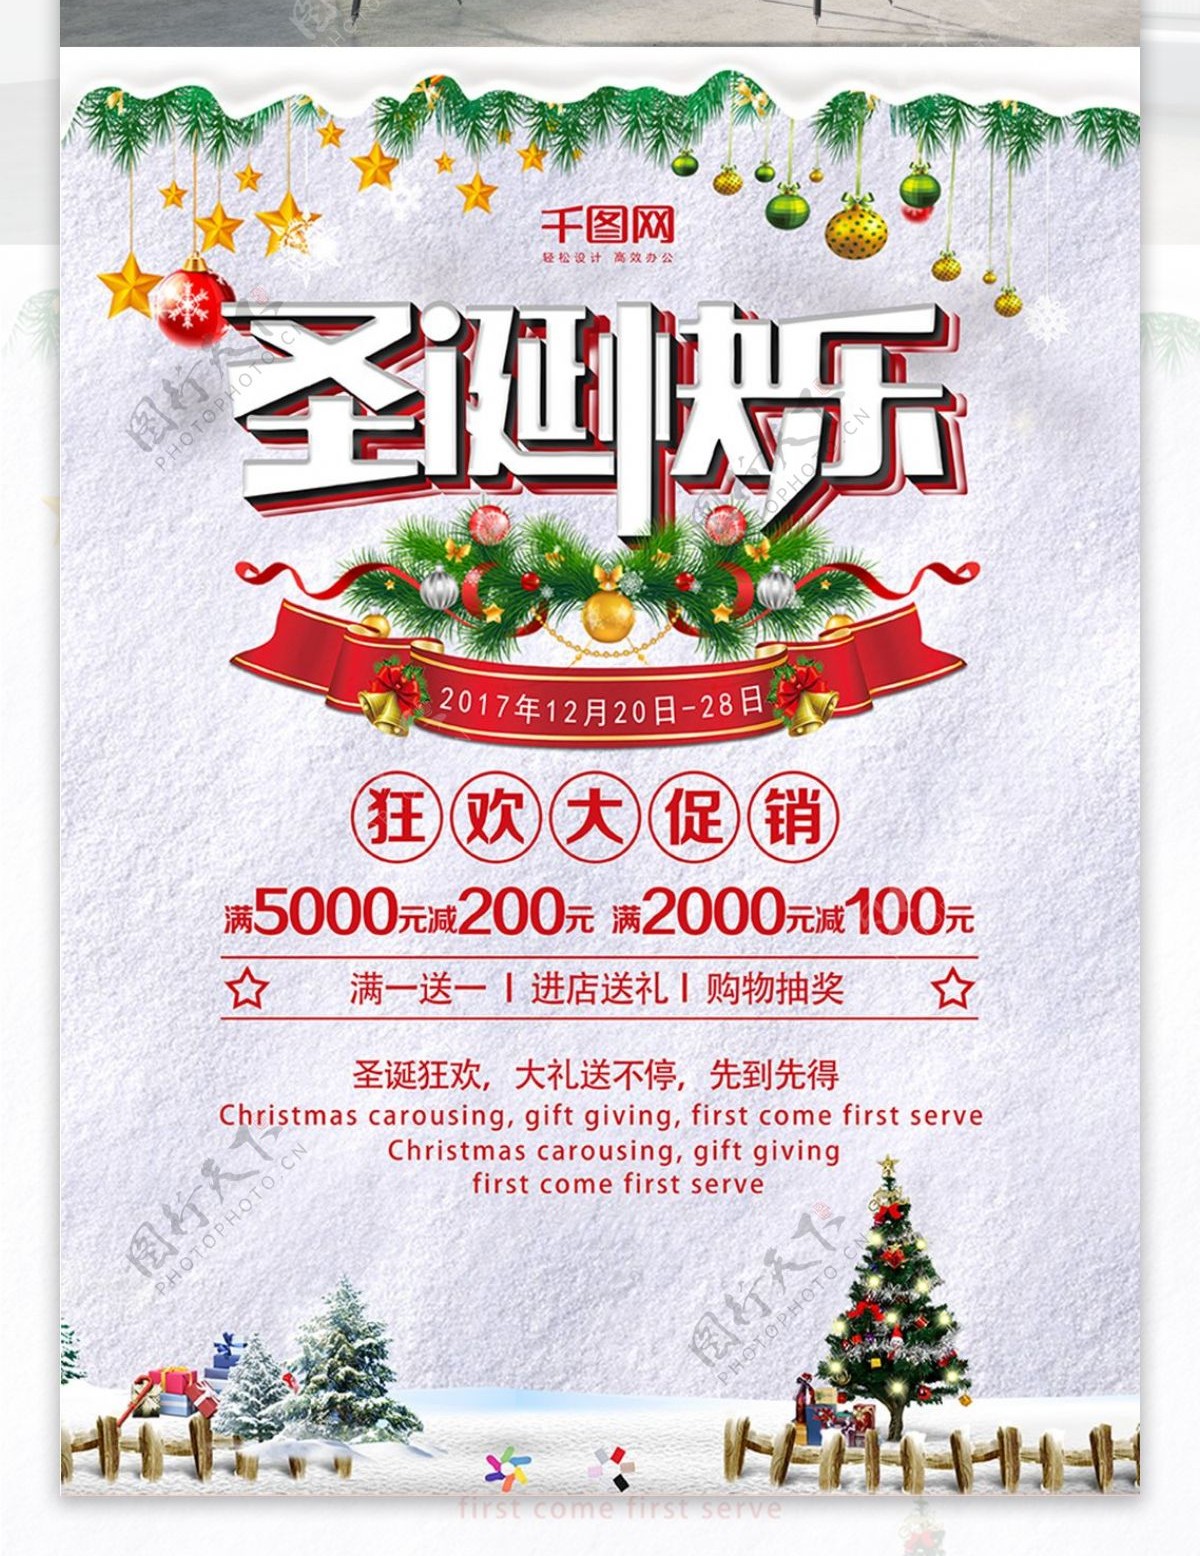 圣诞节快乐铃铛狂欢大促销满减商业海报